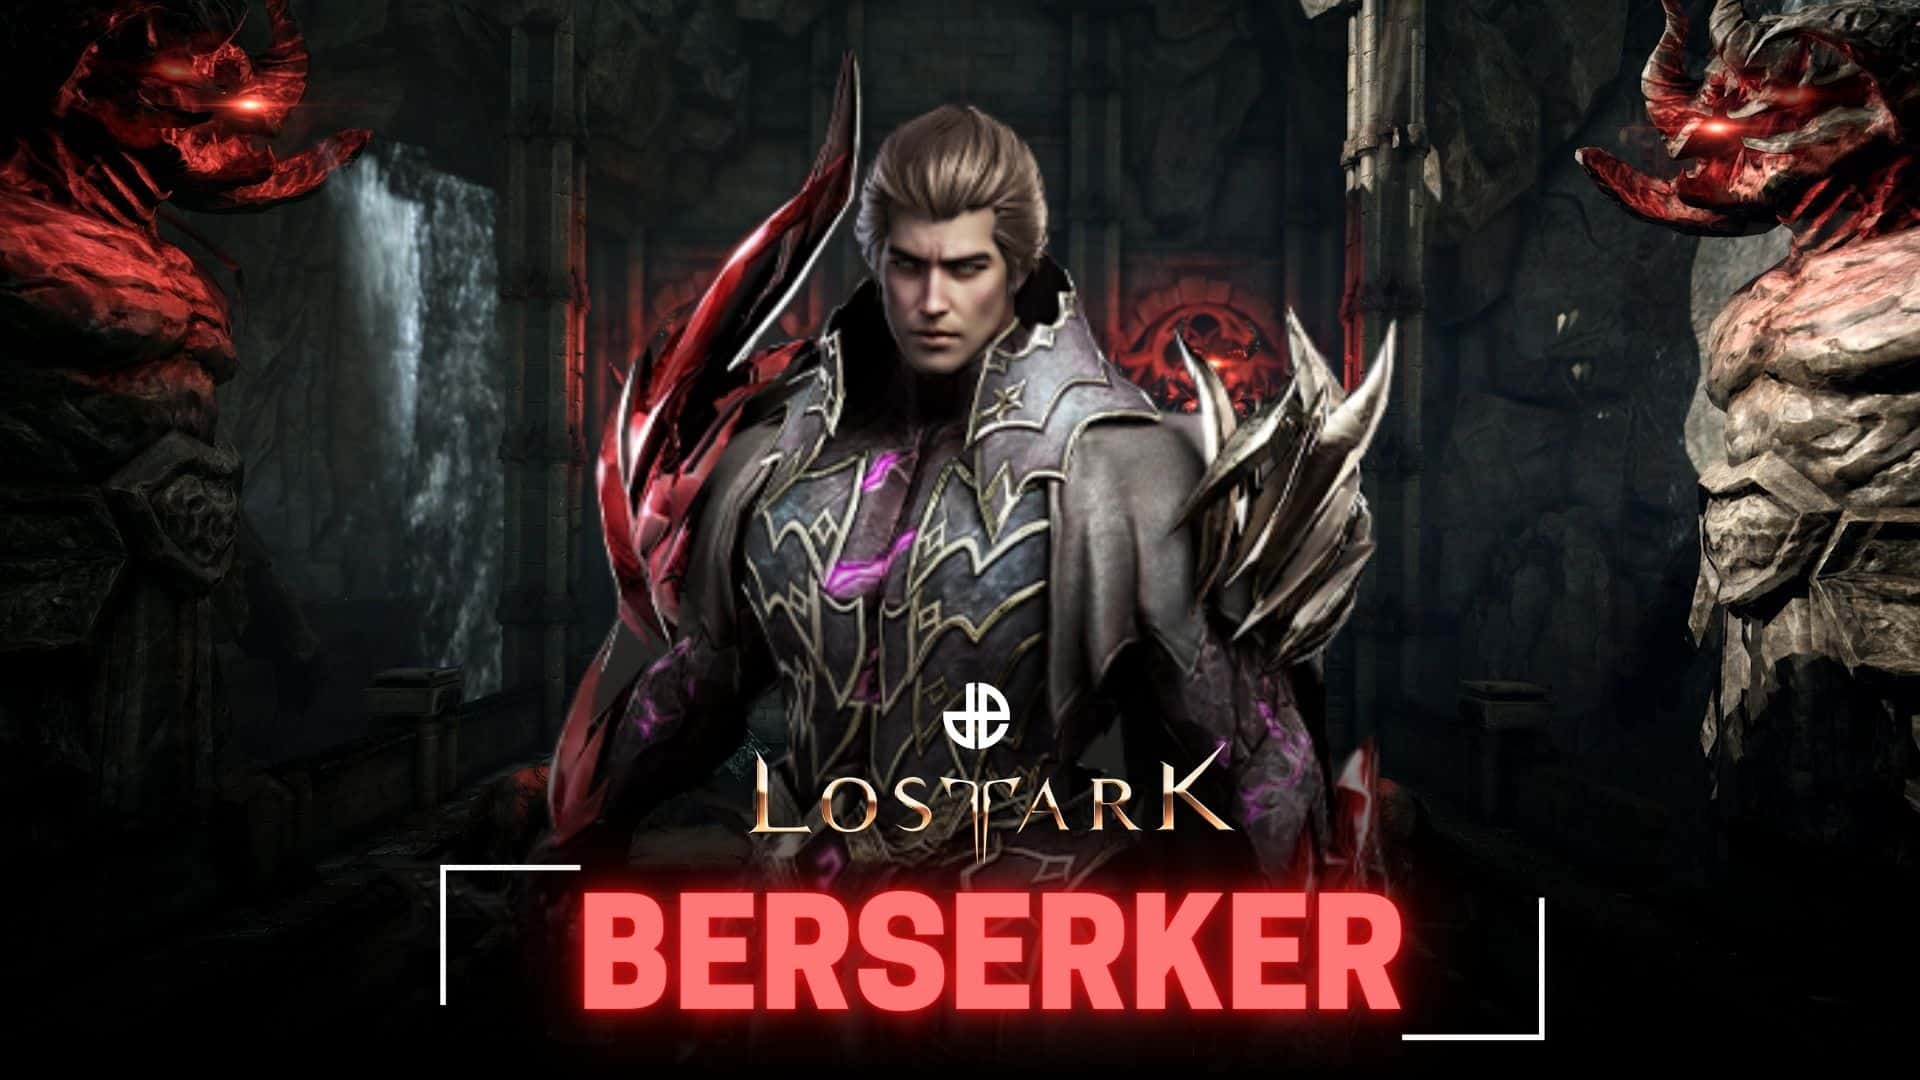 Berserker Lost Ark Builds